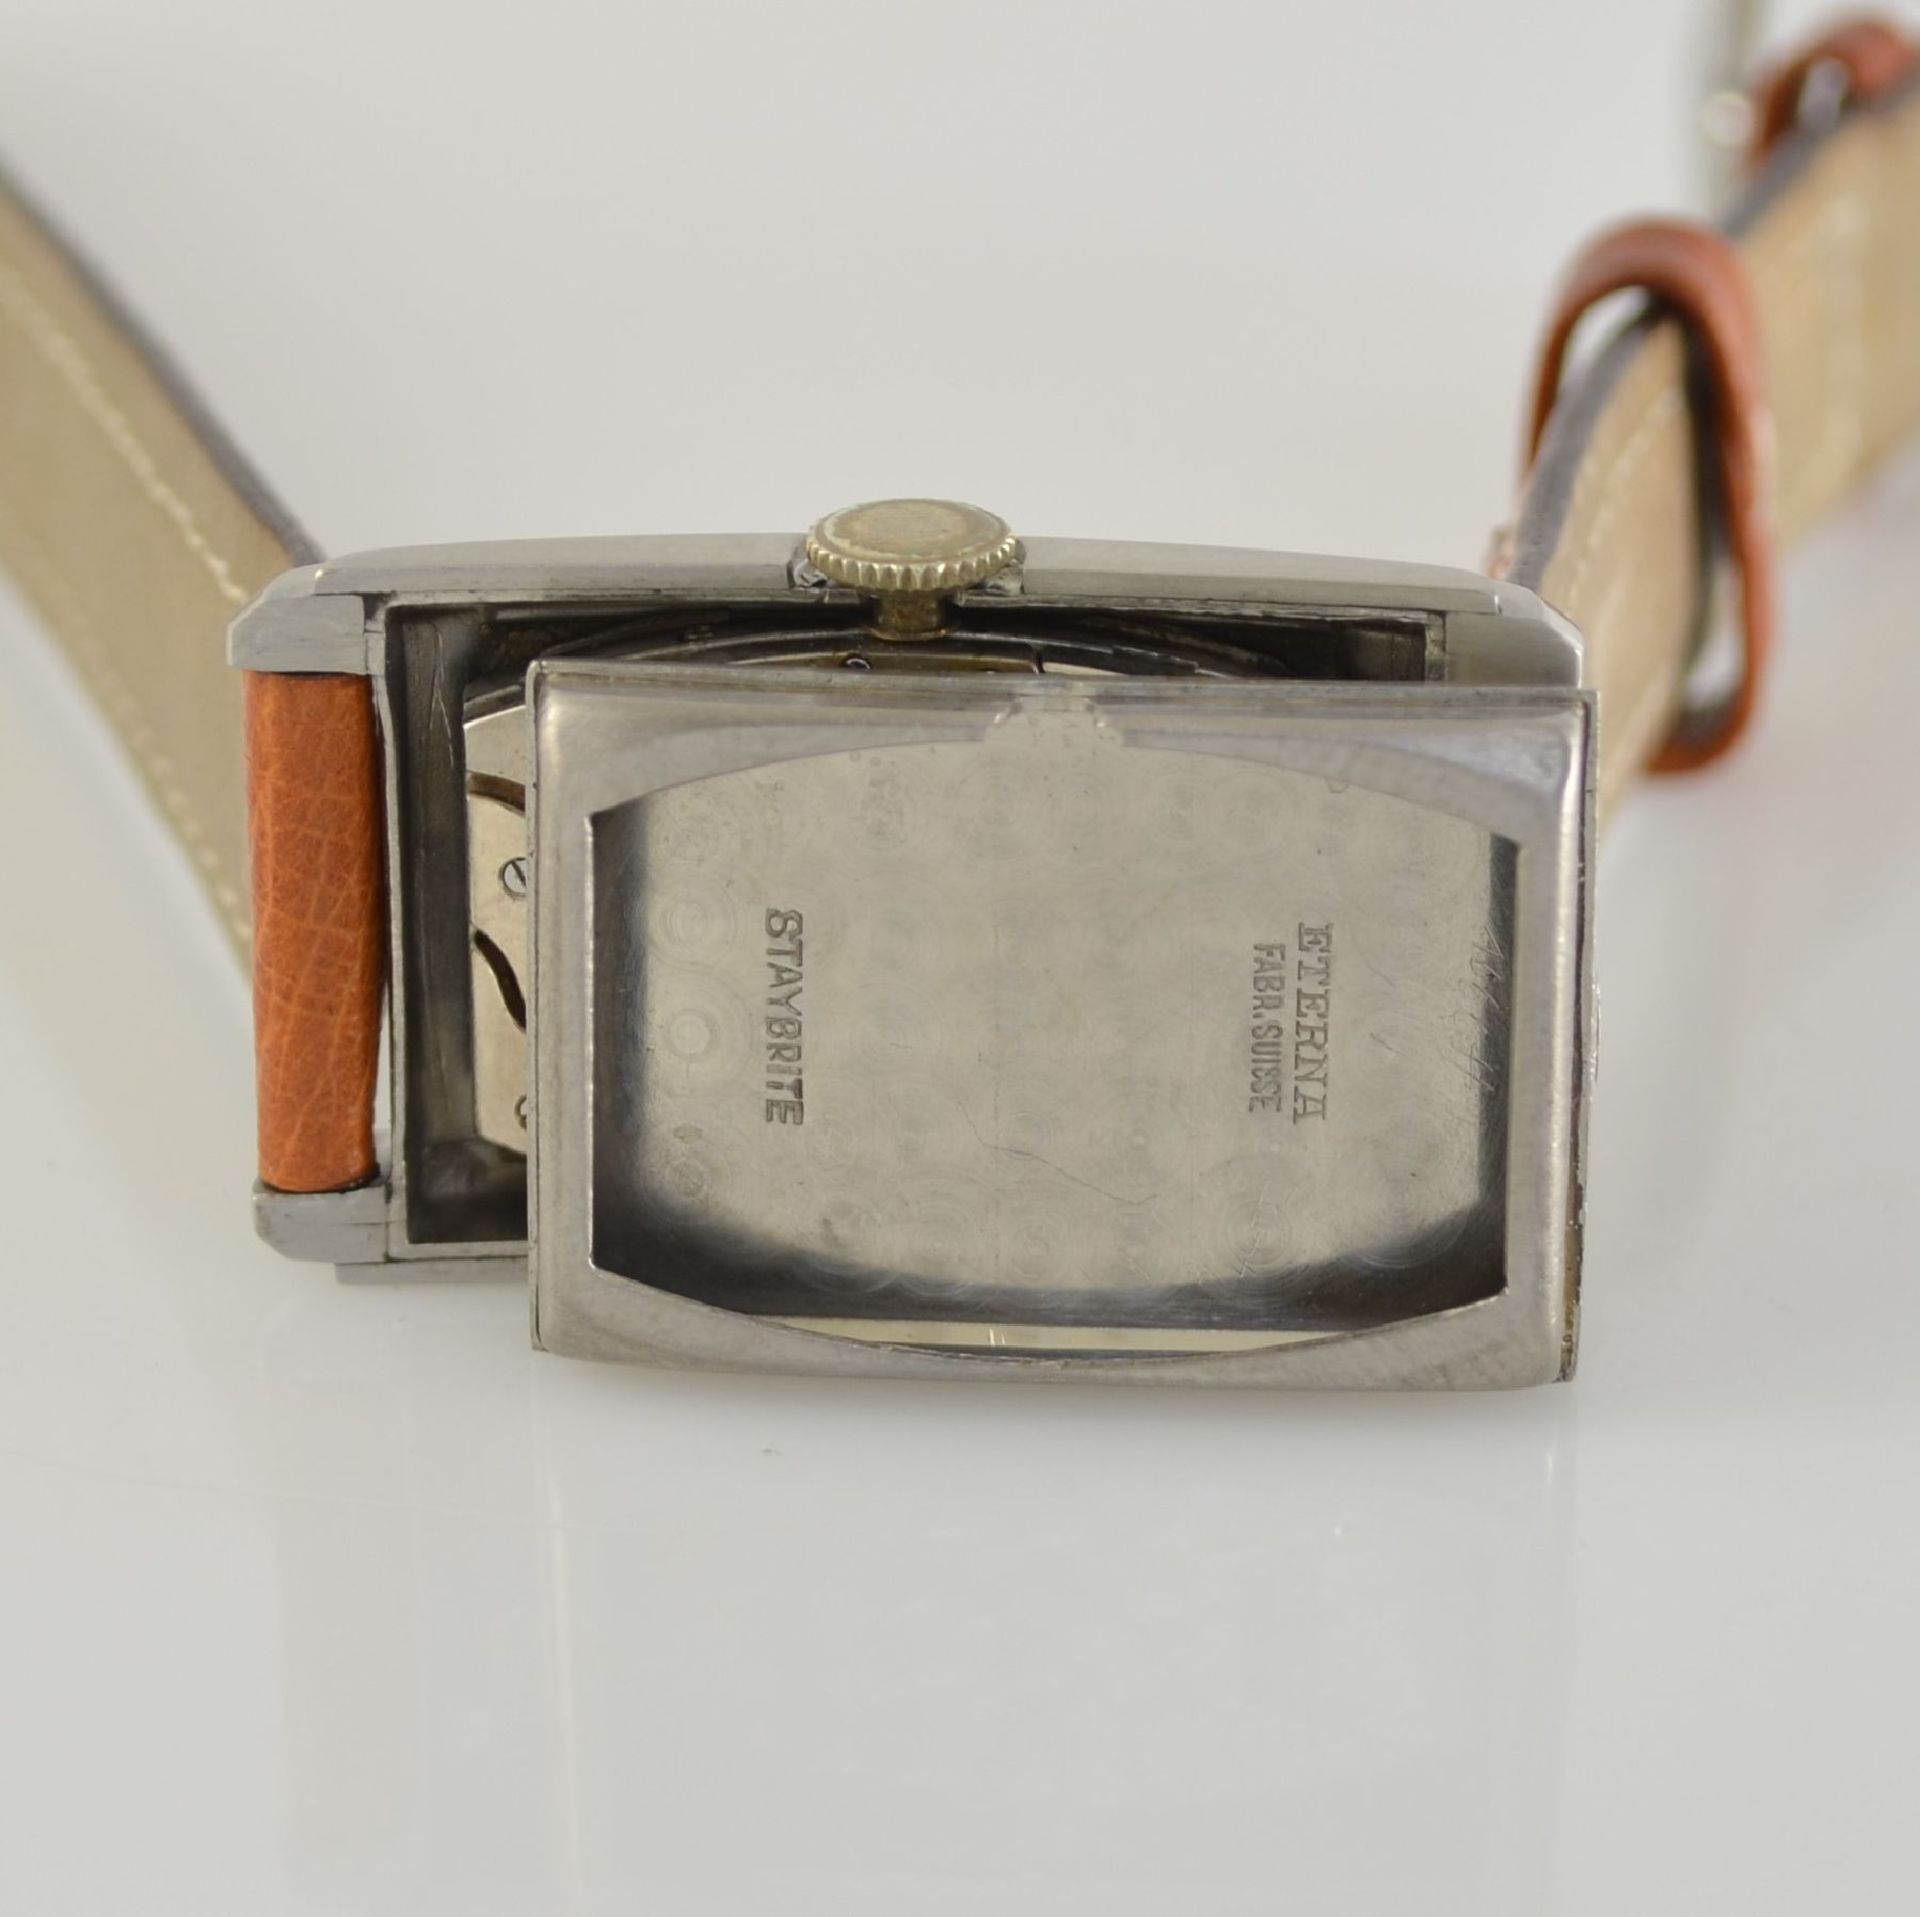 ETERNA 2 rectangular gents wristwatches in steel, Switzerland around 1935, snap on case backs, 1 - Bild 7 aus 13